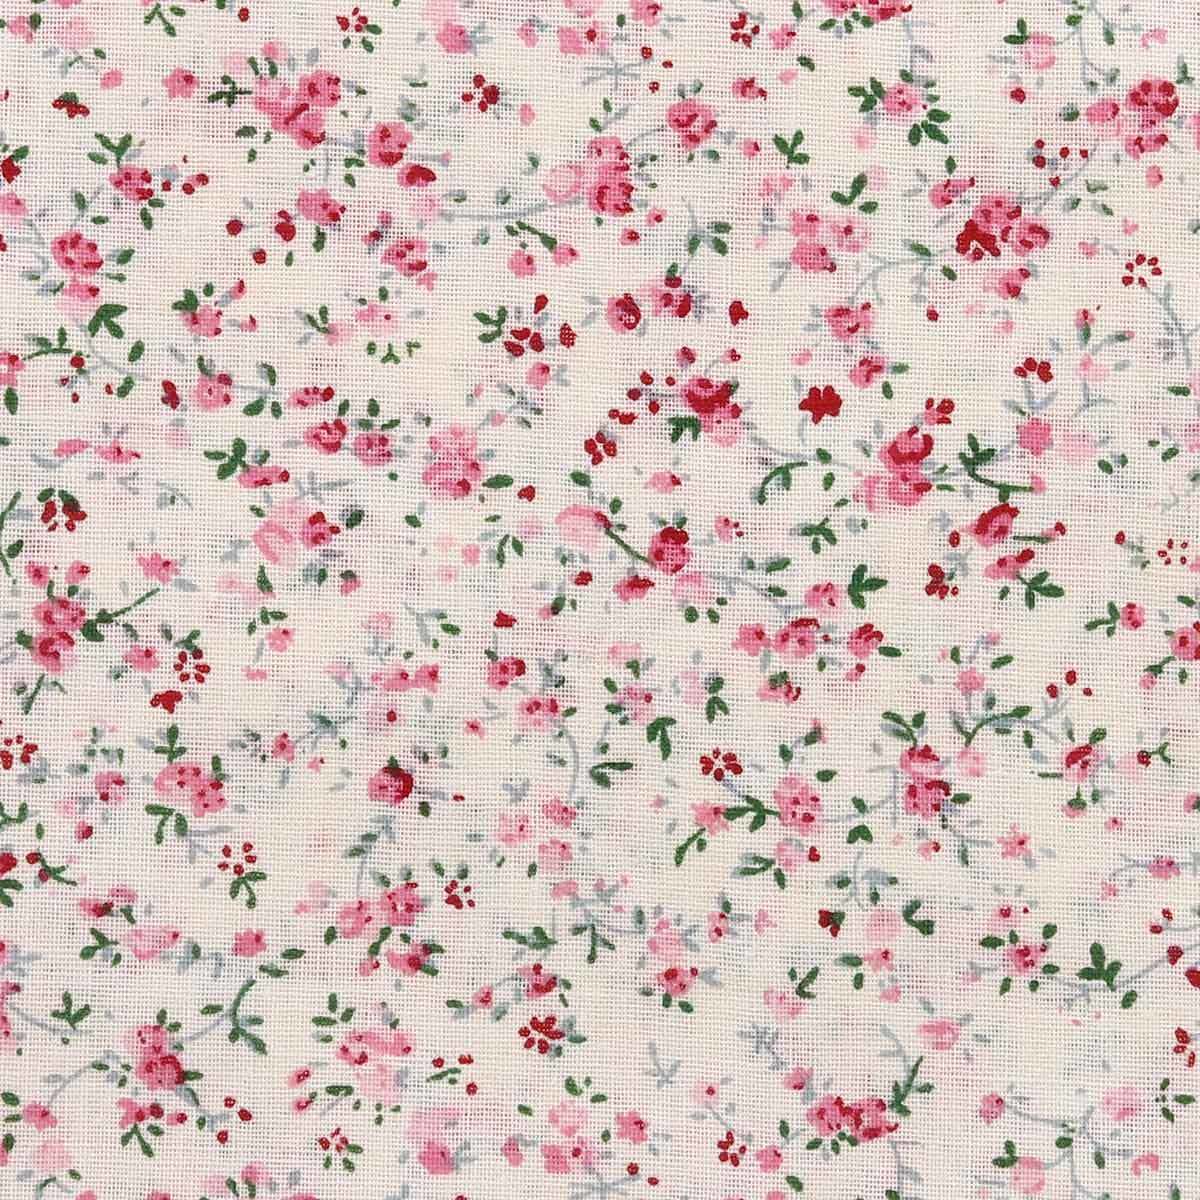 Хлопок в цветочек. Ткань в мелкий цветочек. Ткань с мелкими цветами. Ткань хлопок в мелкий цветочек. Ткань в мелкий цветочек розовый.